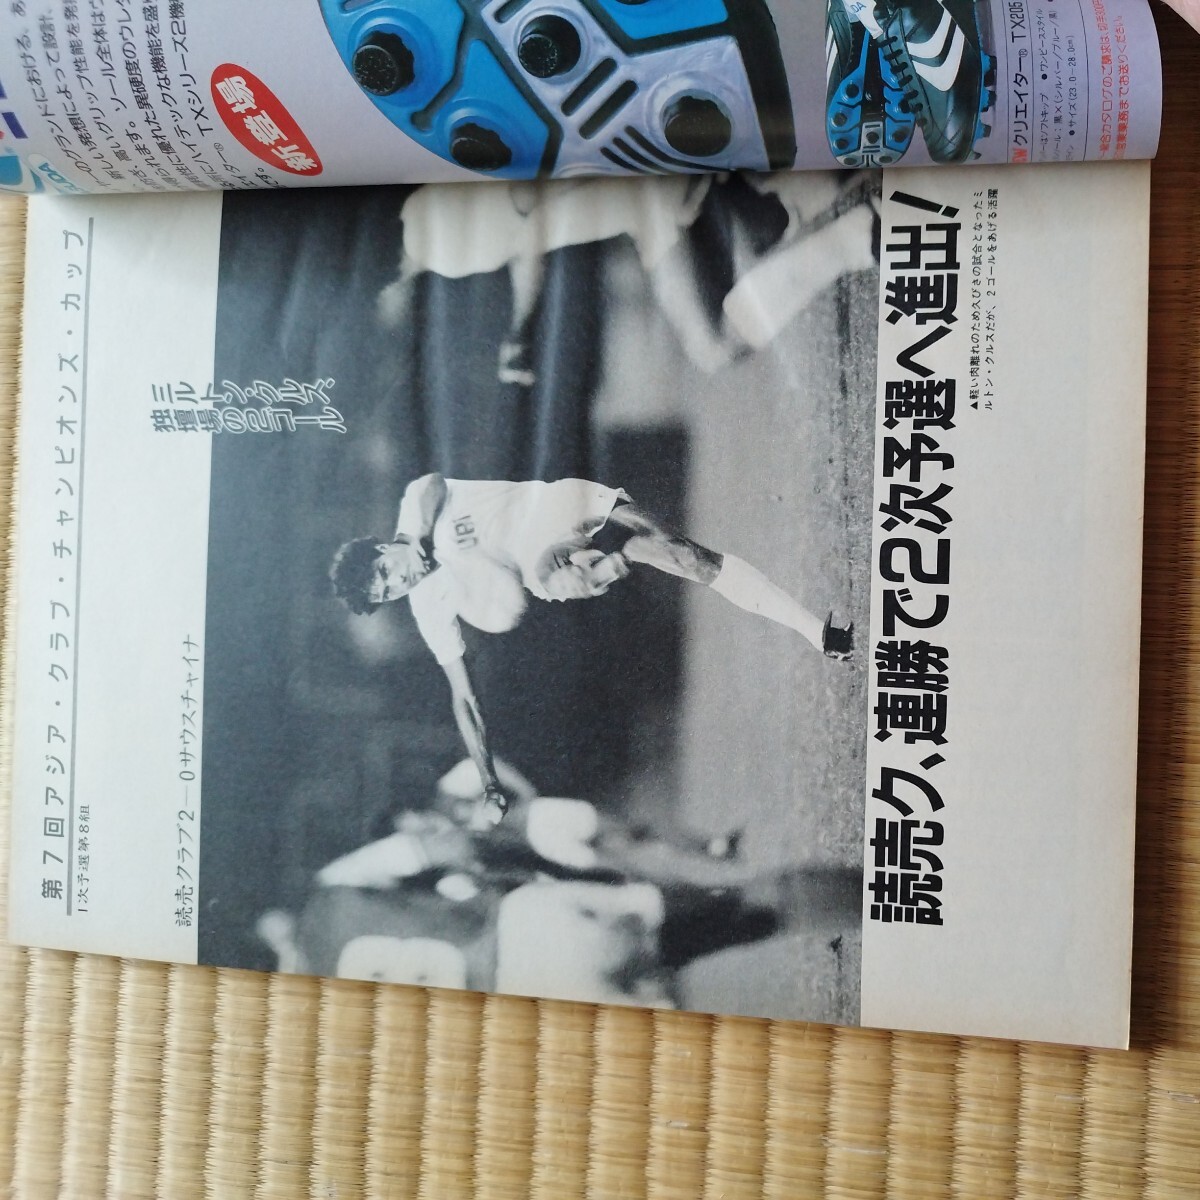  футбол журнал 12/1987 Япония представитель душа . колесо . выбор Германия ma Rado na